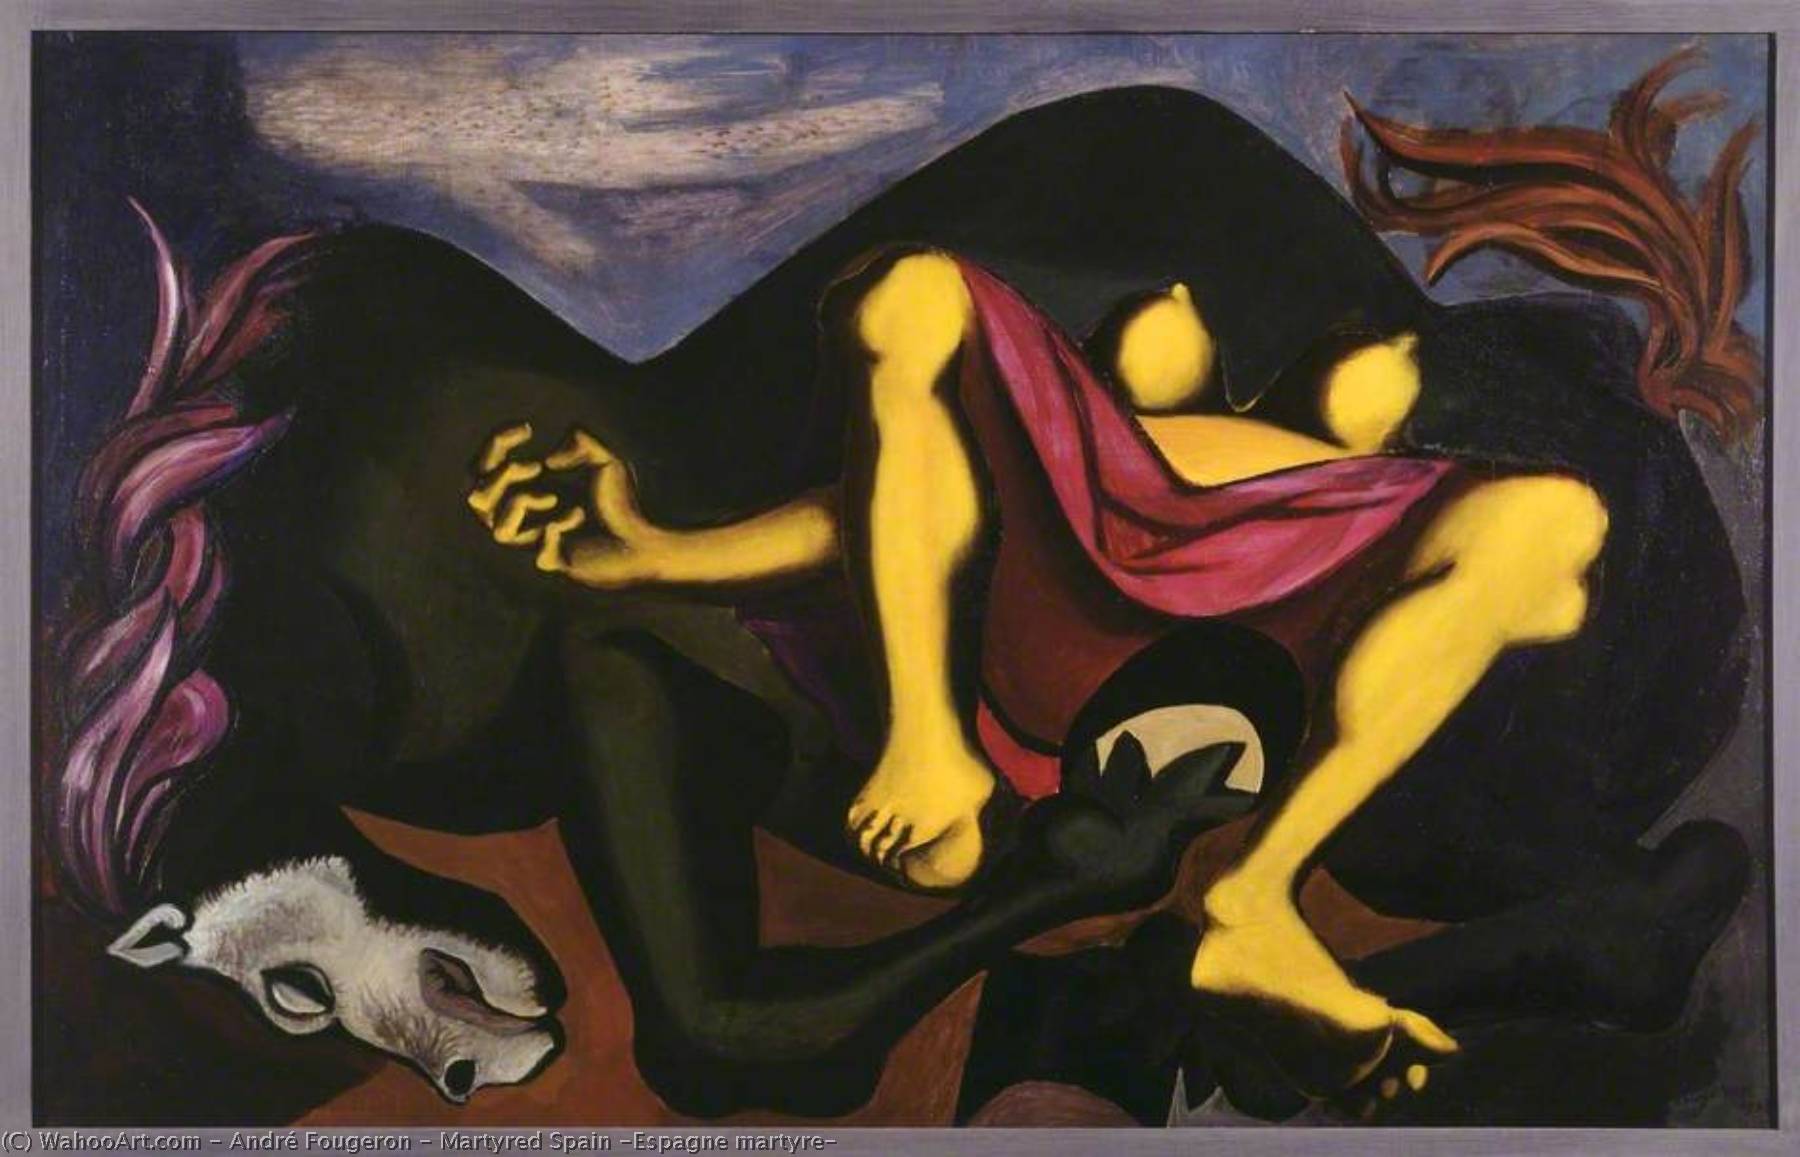 Achat Reproductions D'art Martyred Spain (Espagne martyre), 1937 de André Fougeron (Inspiré par) (1913-1998) | ArtsDot.com